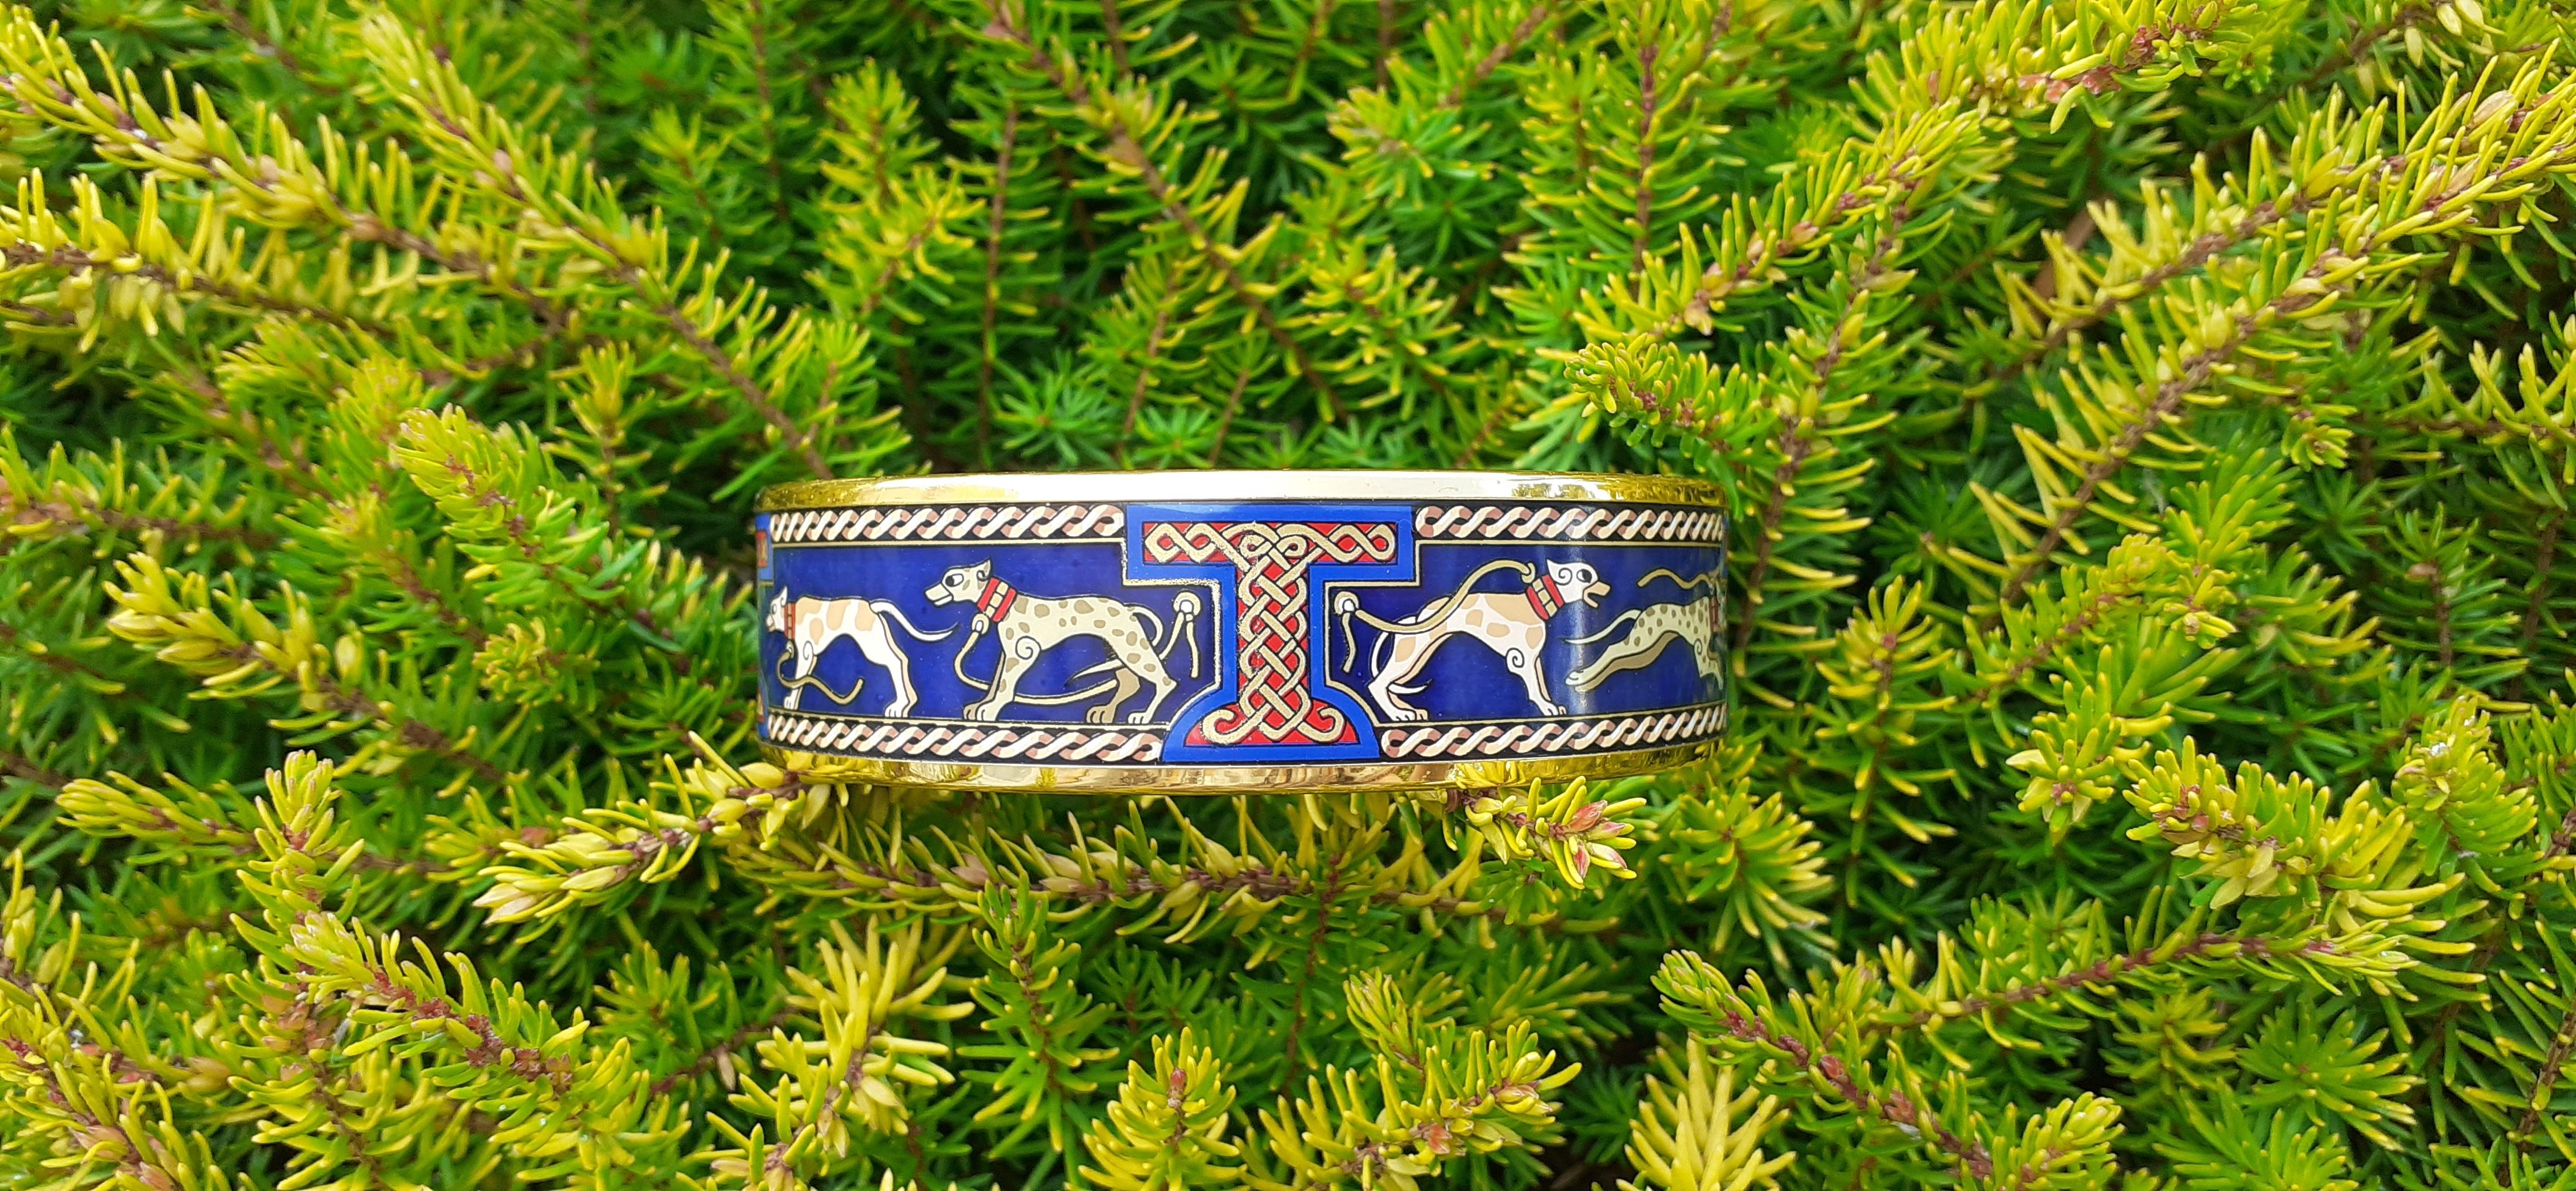 navy hermes bracelet